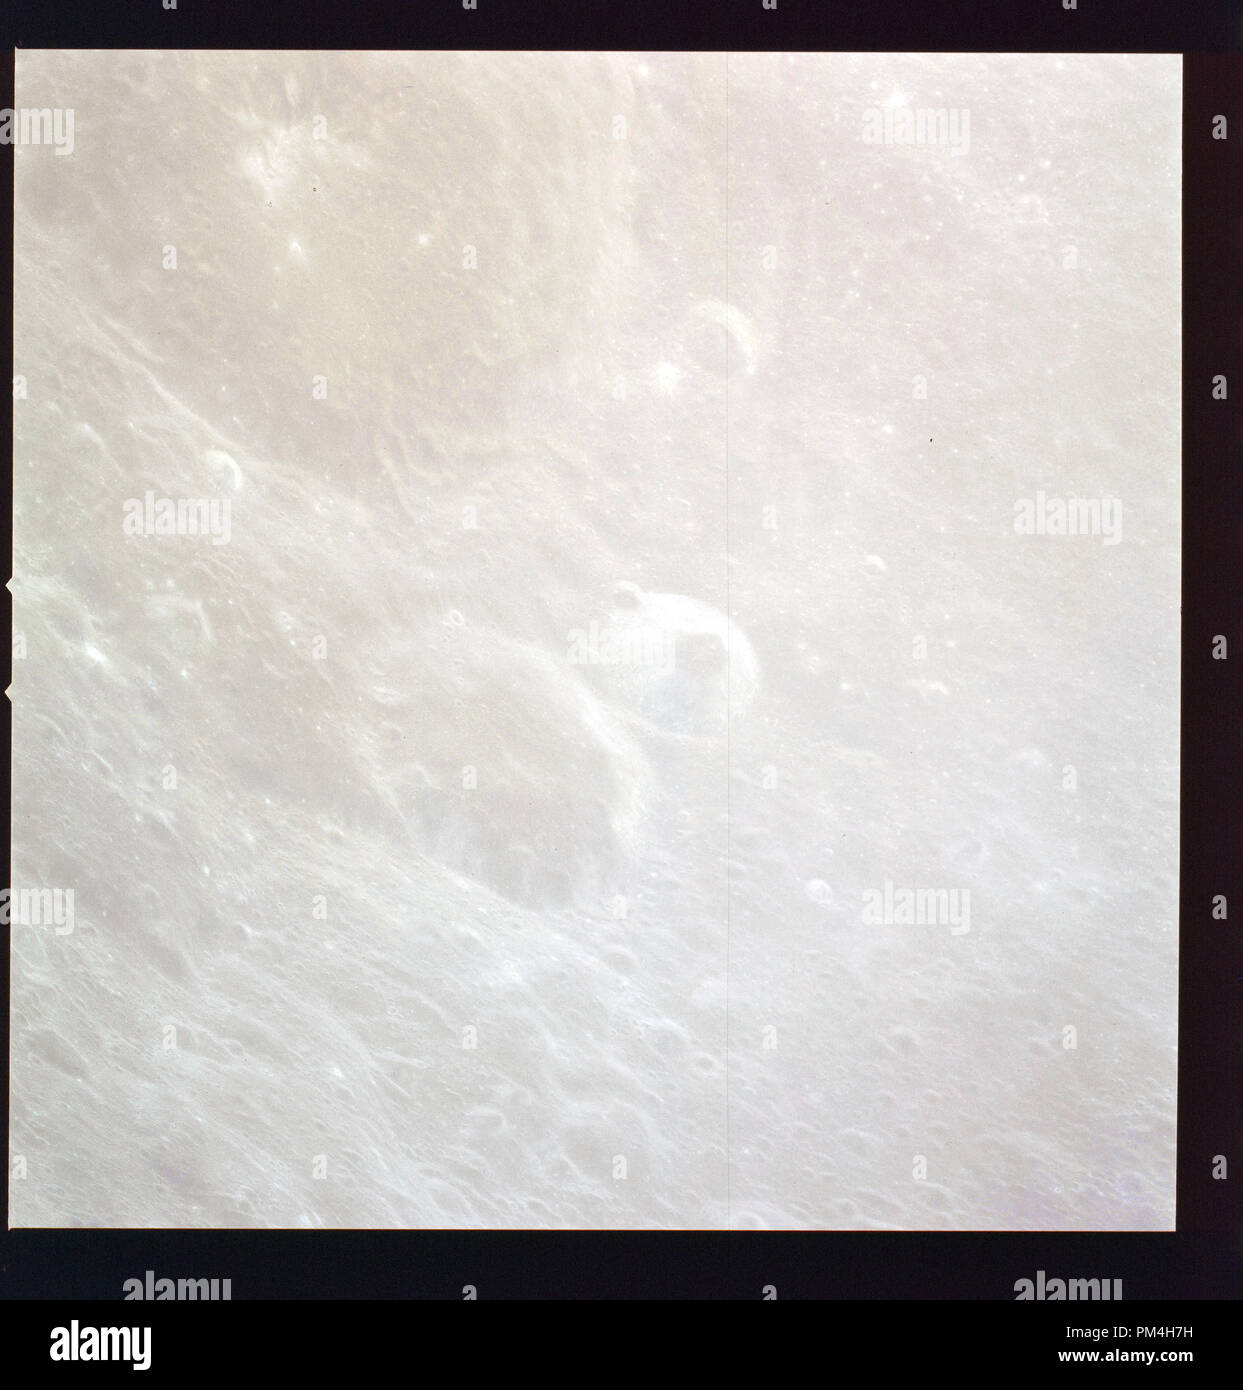 Apollo 11 Auf dem Mond während der Juli 1969 Geschichte Die Reise auf den Mond und die anschließende Mondlandung. Datei Referenz Nr. 1003 241 THA Stockfoto